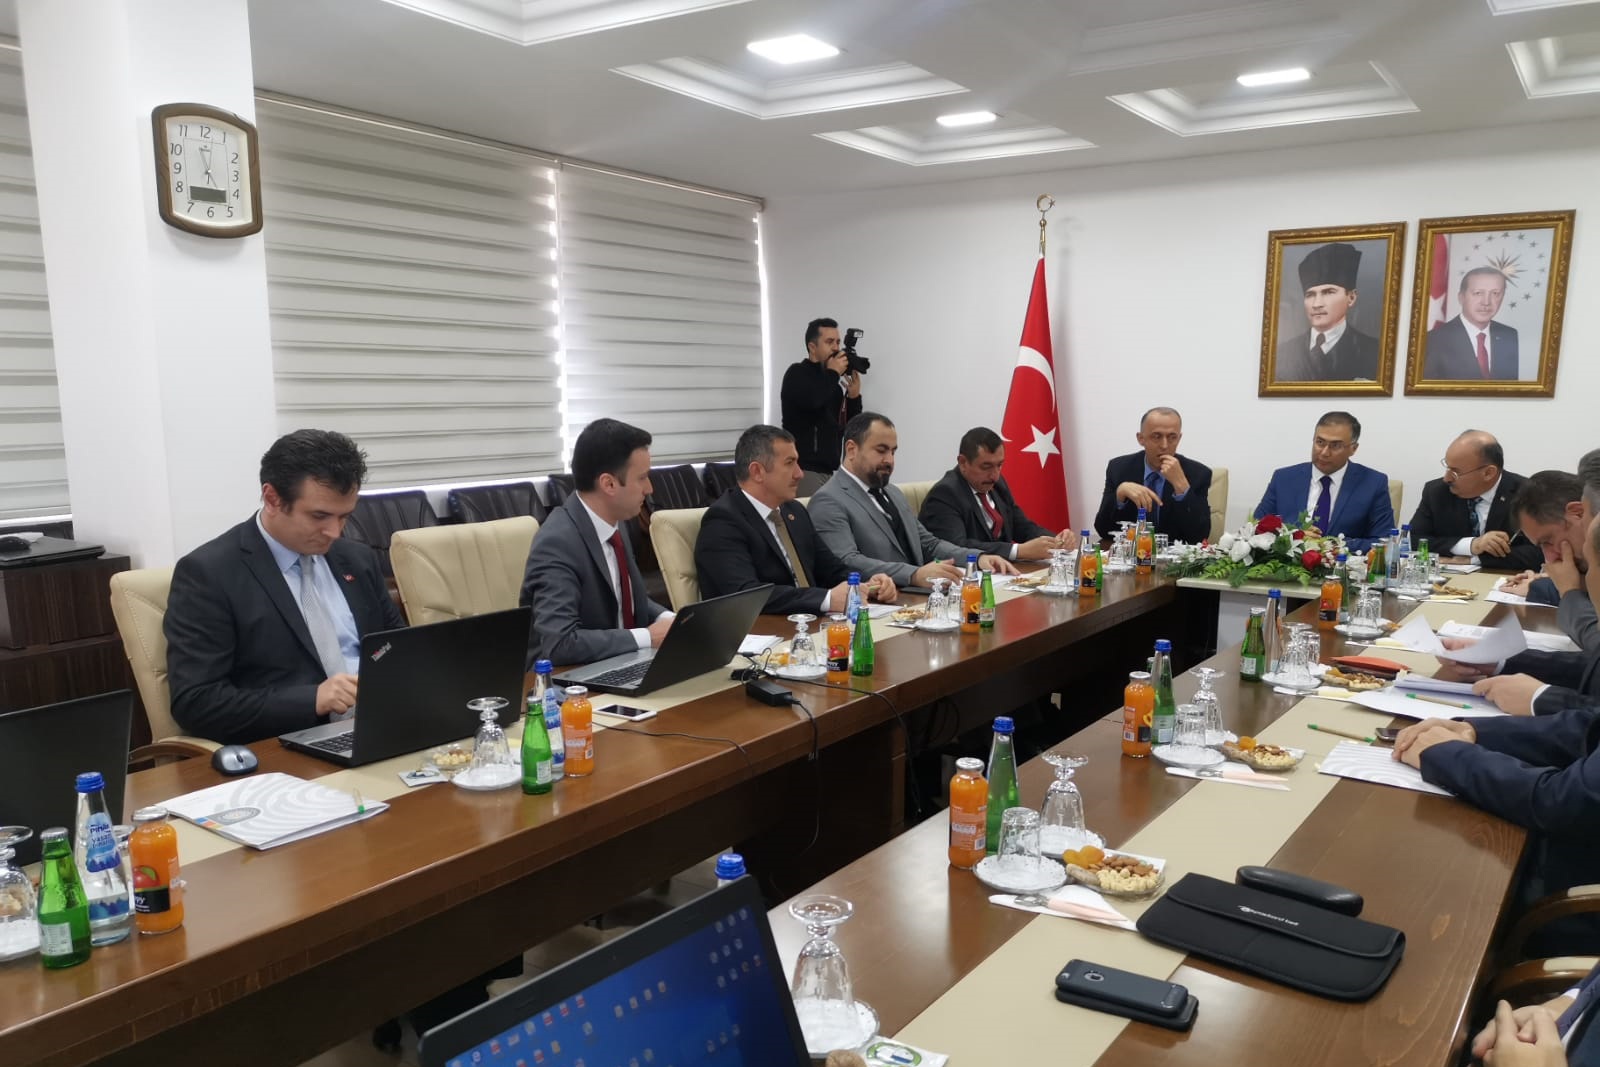 2019 Yılının Son KUZKA Yönetim Kurulu Toplantısı Sinop’ta Yapıldı